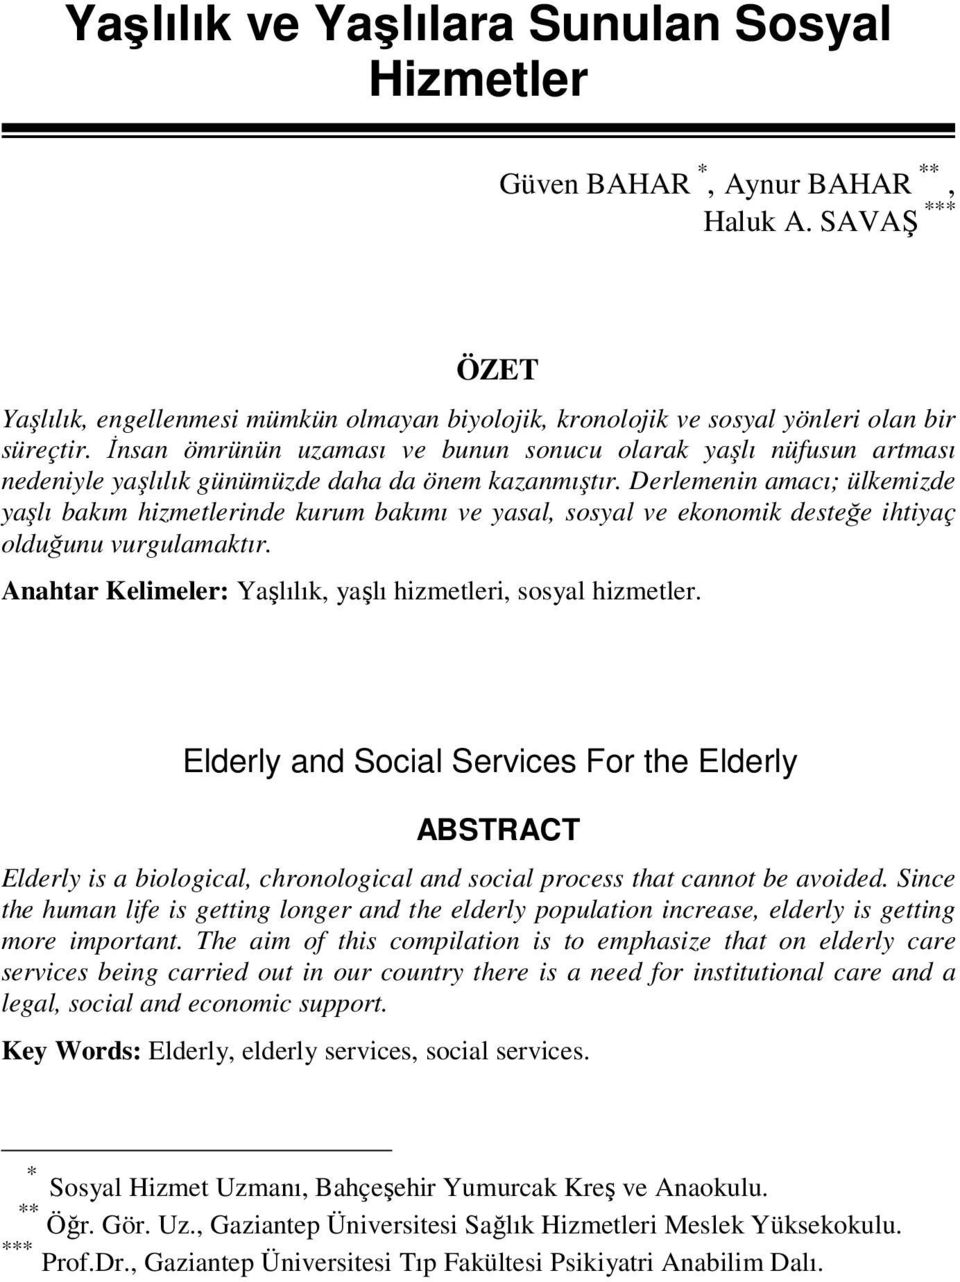 Derlemenin amacı; ülkemizde yaşlı bakım hizmetlerinde kurum bakımı ve yasal, sosyal ve ekonomik desteğe ihtiyaç olduğunu vurgulamaktır. Anahtar Kelimeler: Yaşlılık, yaşlı hizmetleri, sosyal hizmetler.